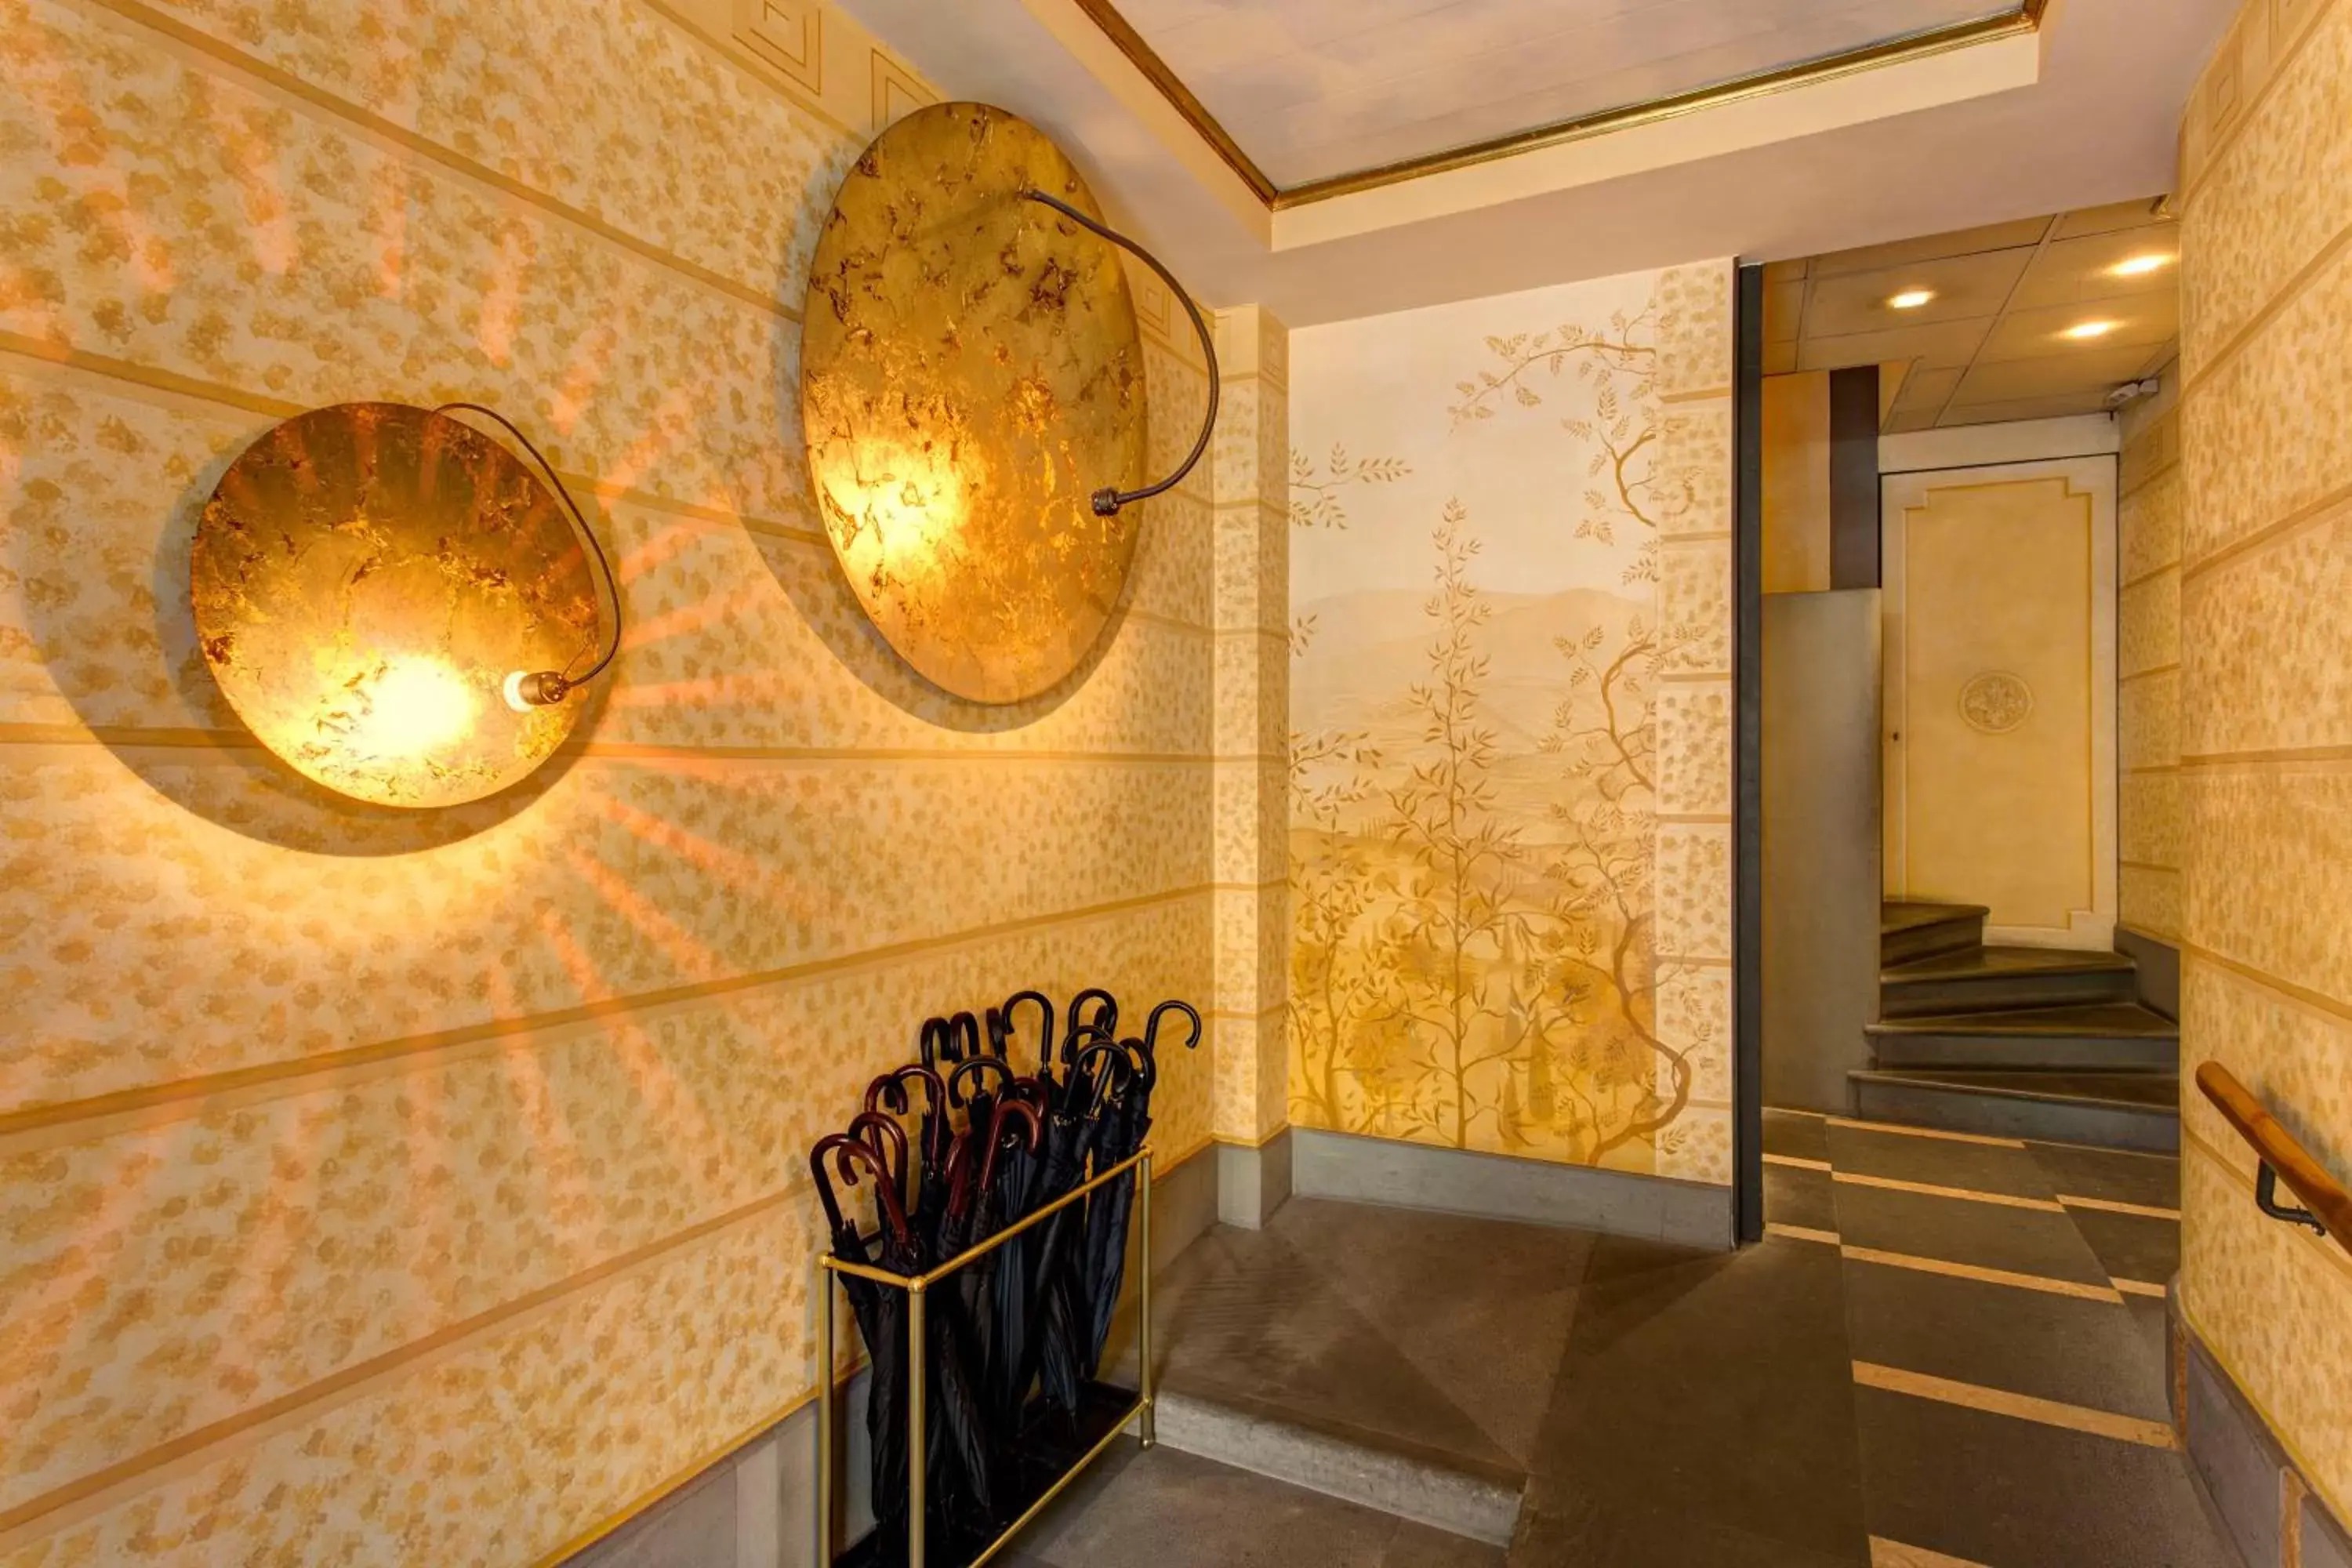 Lobby or reception, Bathroom in Appartamenti Porta Nuova 80